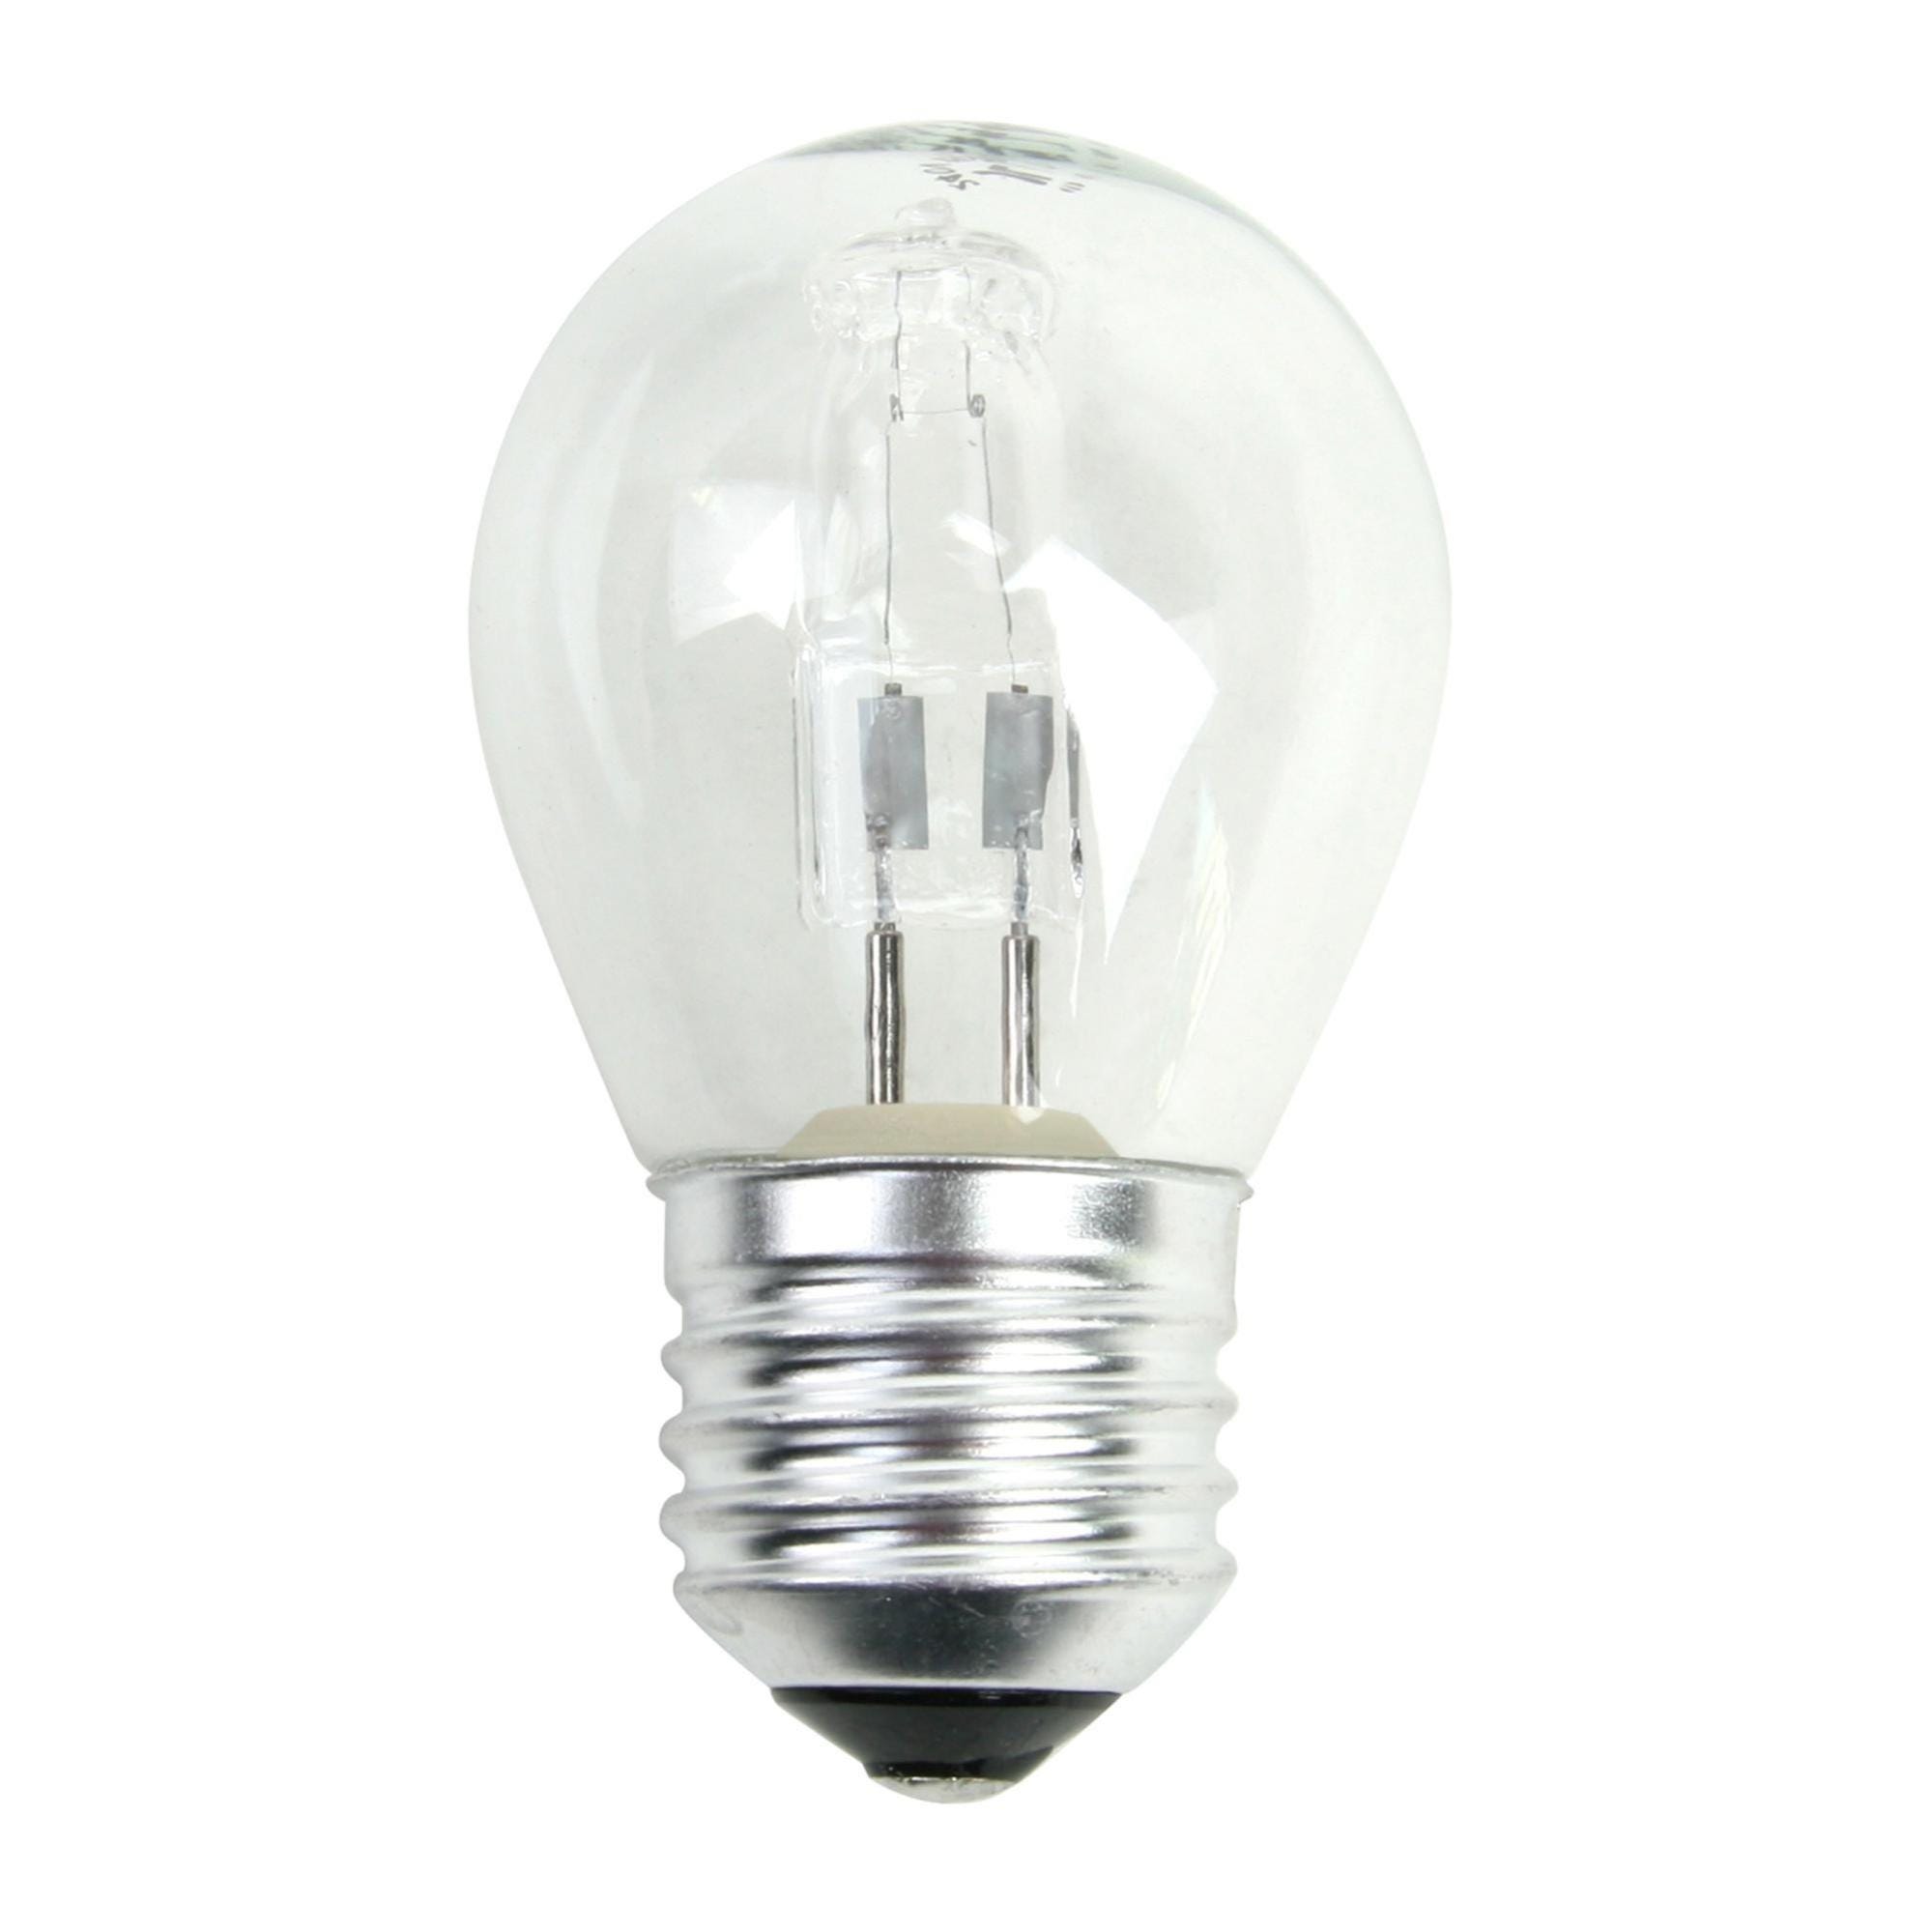 L'OUTIL PARFAIT - Ampoule halogène économique 330w - Ampoule halogène 330w  à économie d'énergie Classe C 330w - Livraison gratuite dès 120€